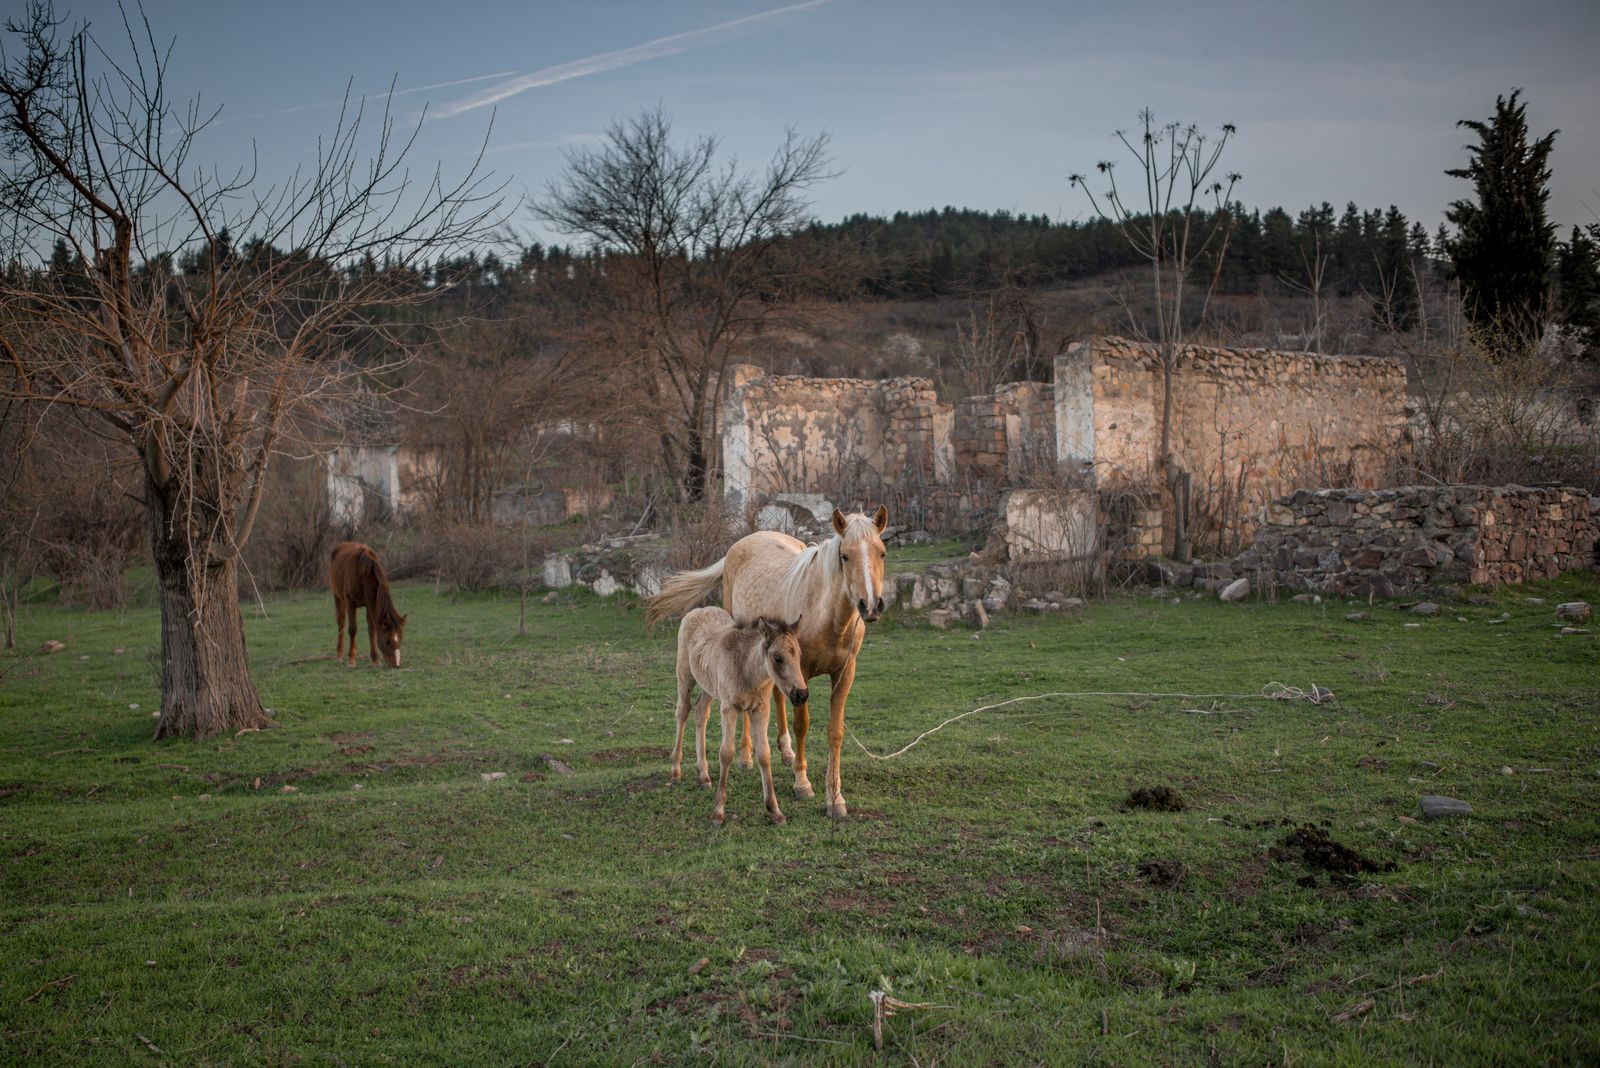 © Anush Babajanyan - Horses stand on a pasture next to a road in Kovsakan / Zangilan, Nagorno Karabakh, on March 26, 2017.